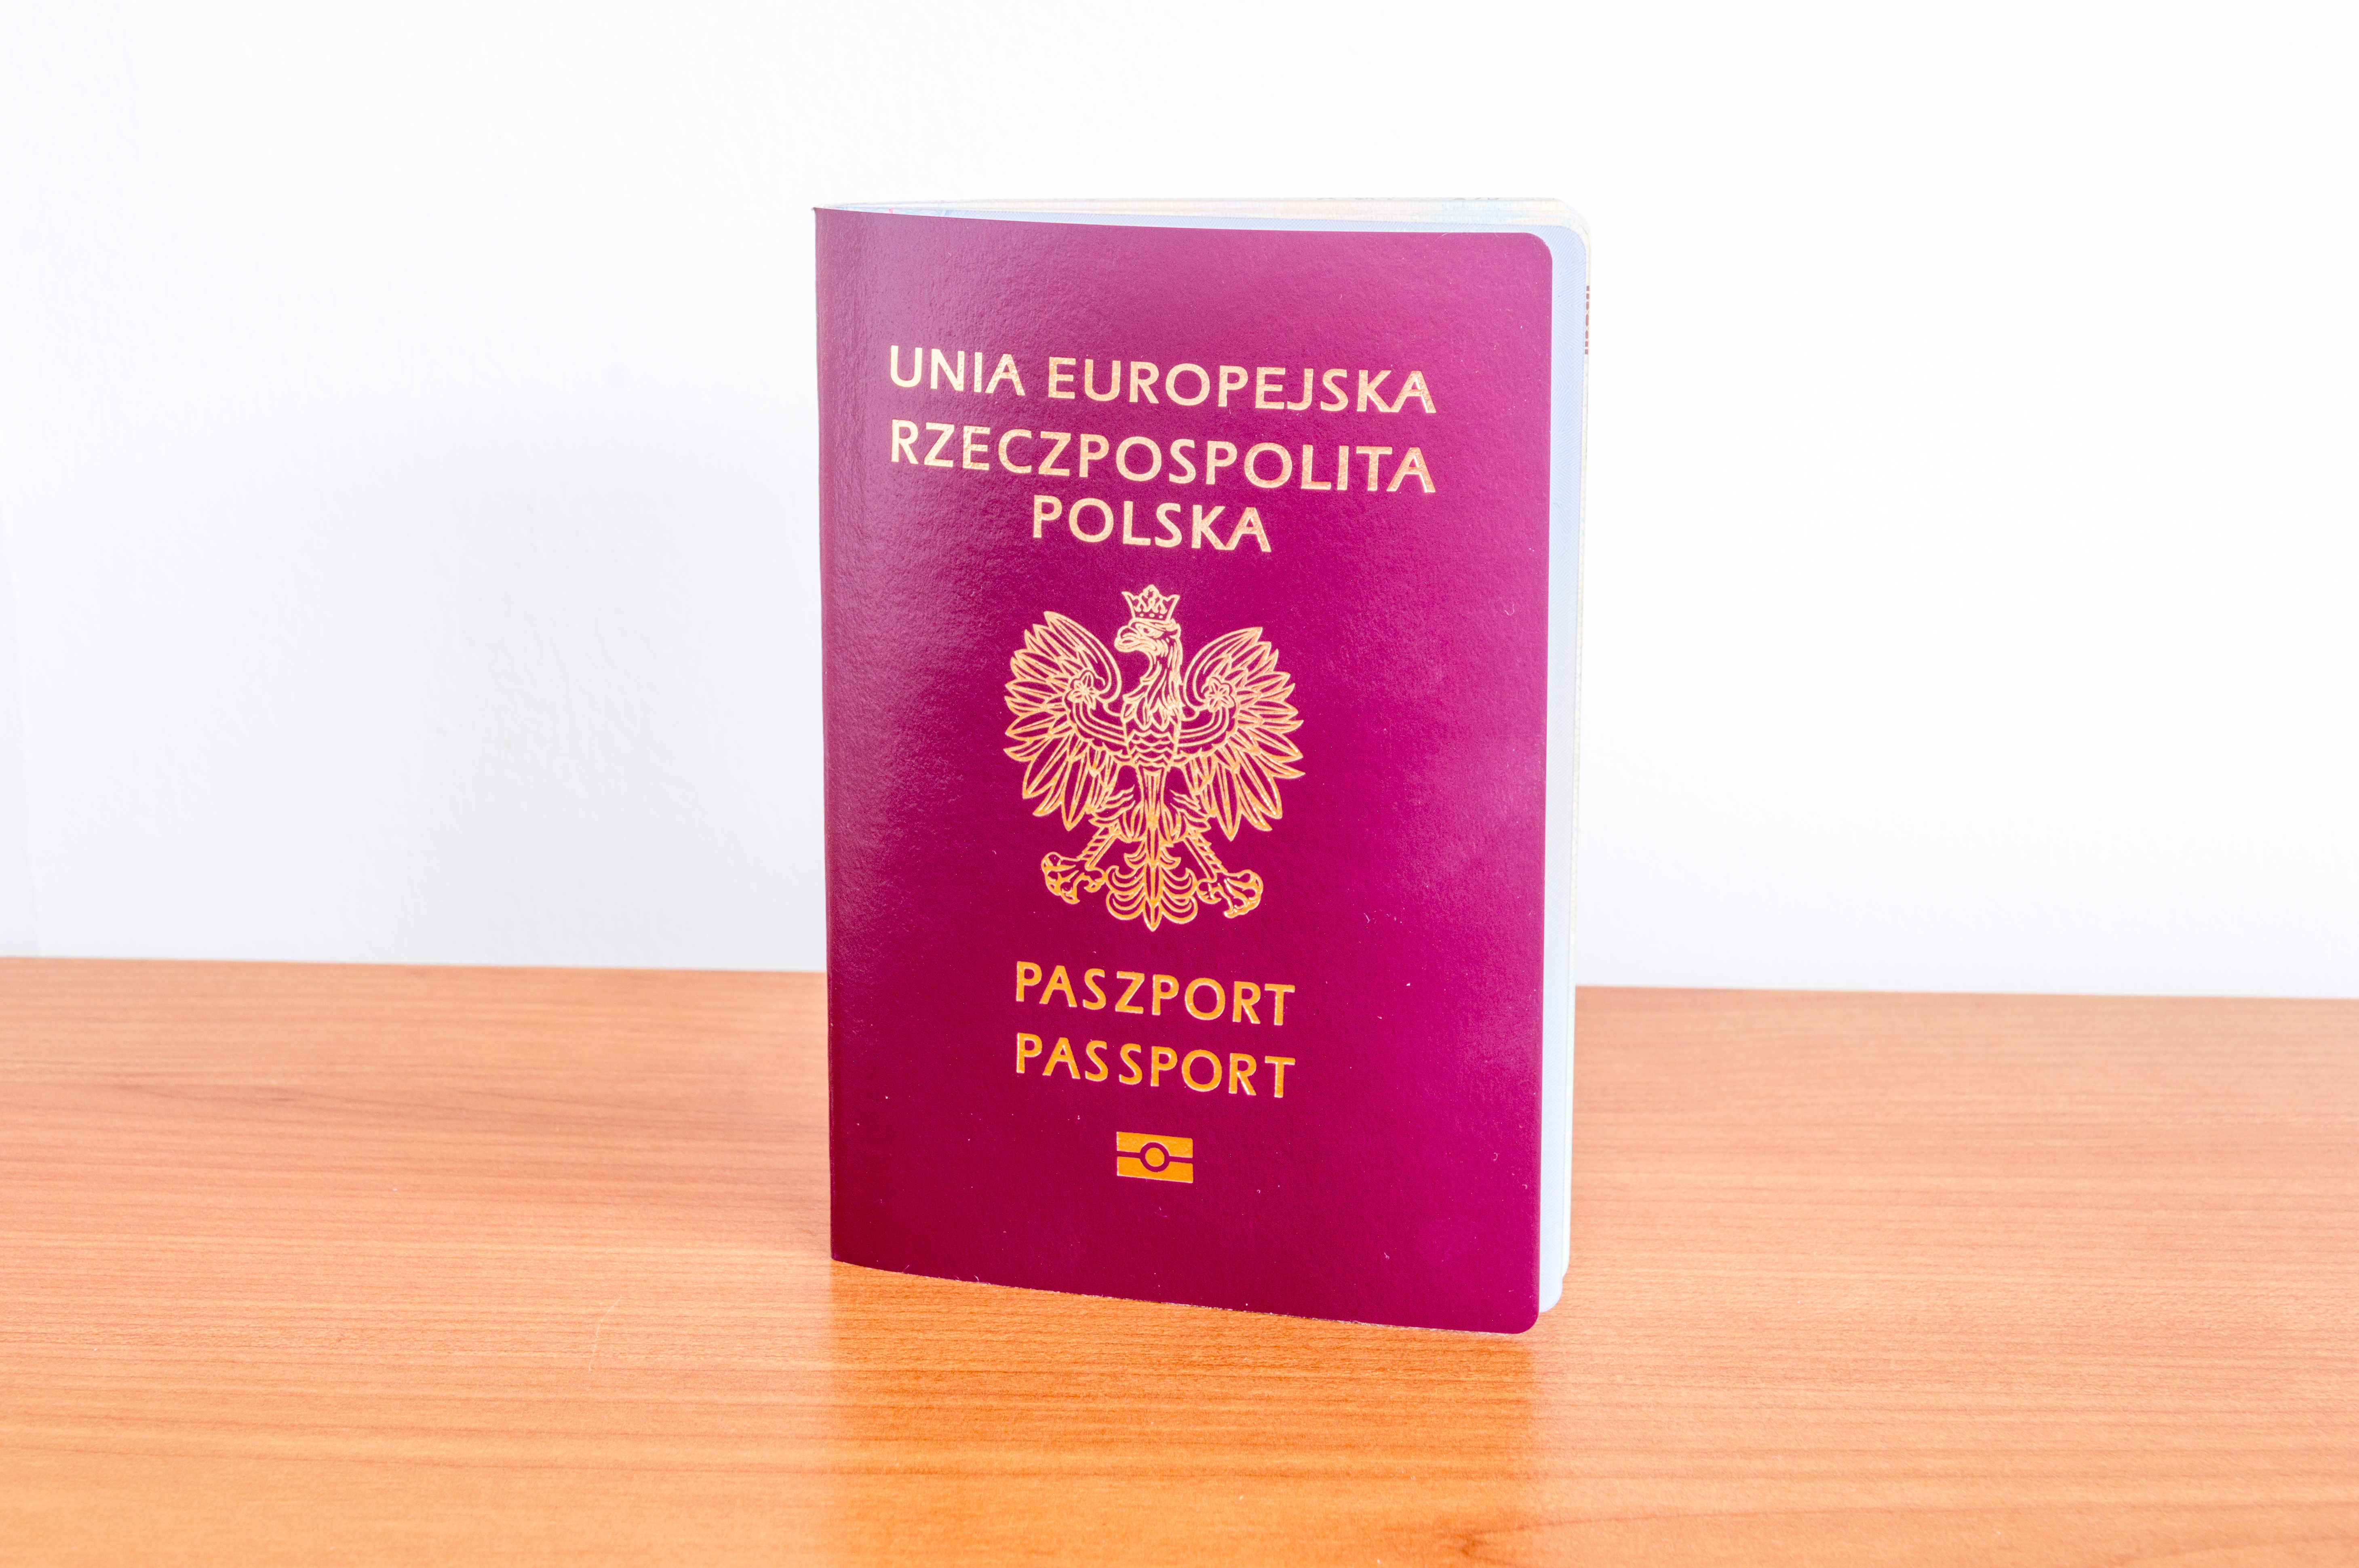 Гражданство польши для россиян: как получить паспорт по корням